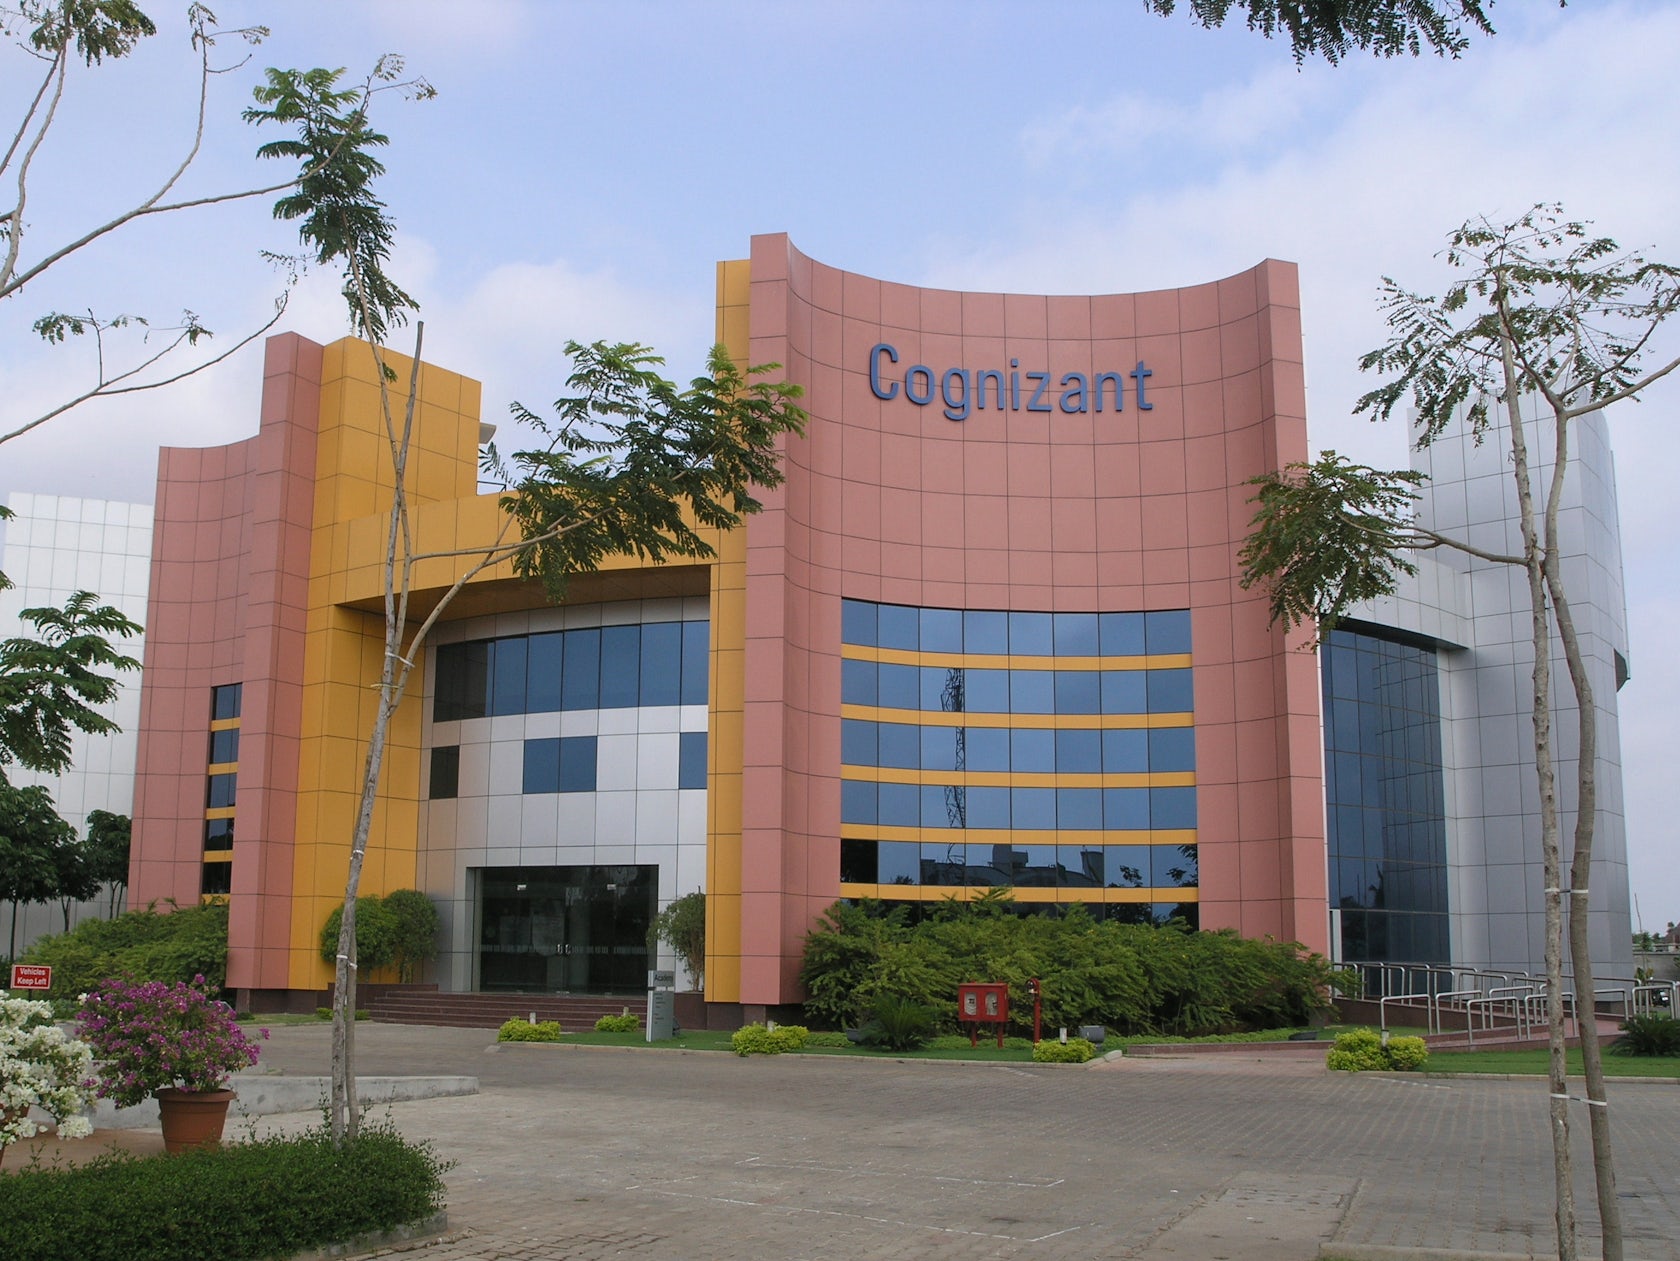 Cognizant thoraipakkam office address cognizant technology solutions pune hinjewadi phase 2 address